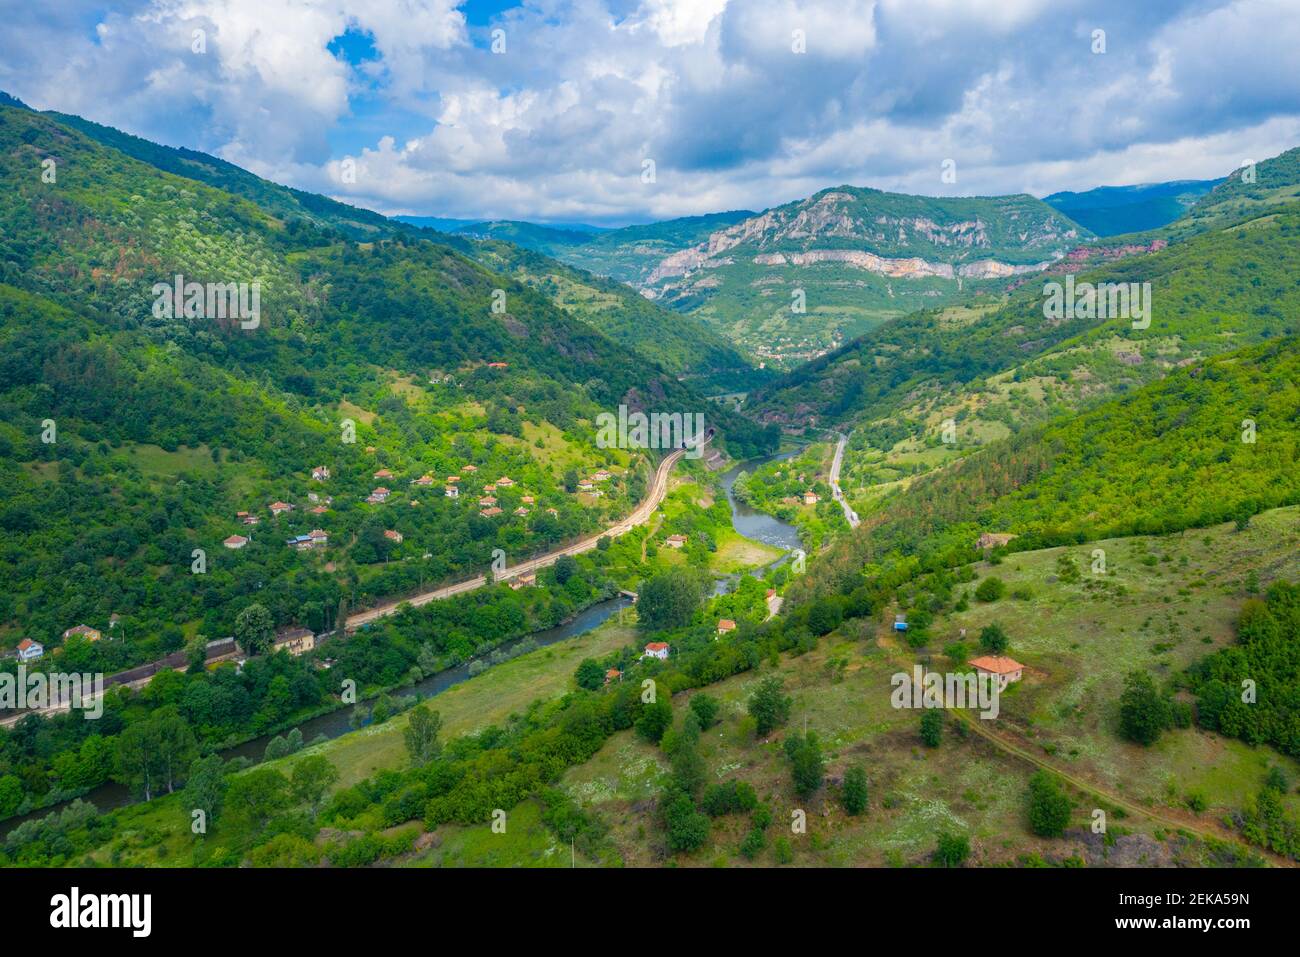 Gorge of Iskar river in Bulgaria Stock Photo